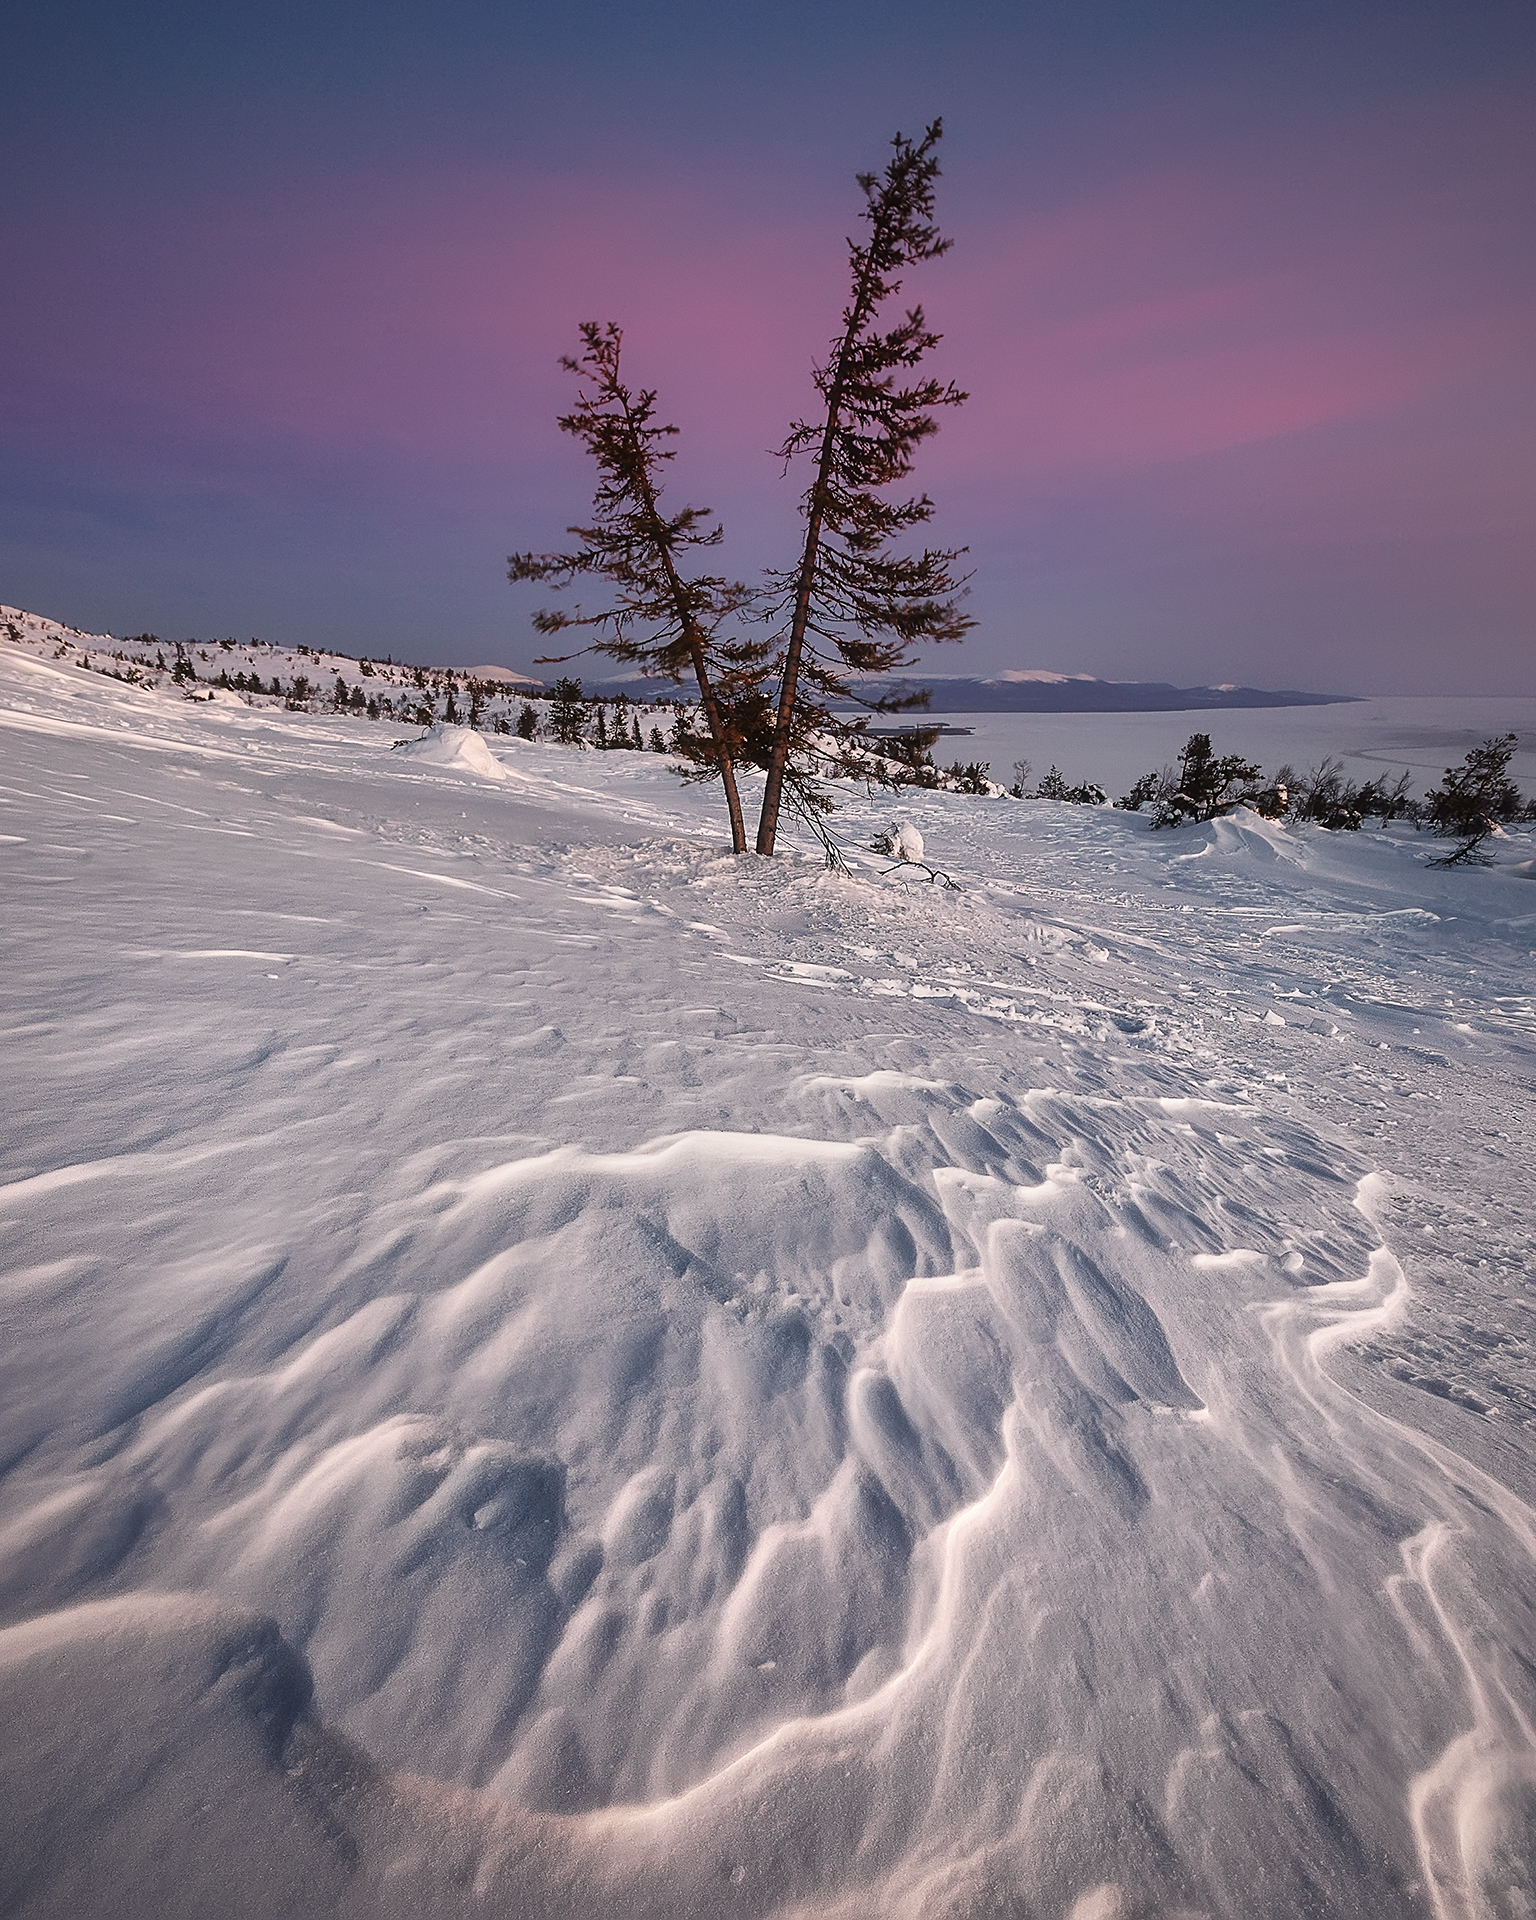 Заполярная природа словно. Зима на севере России. Фото крайнего севера России зимой.